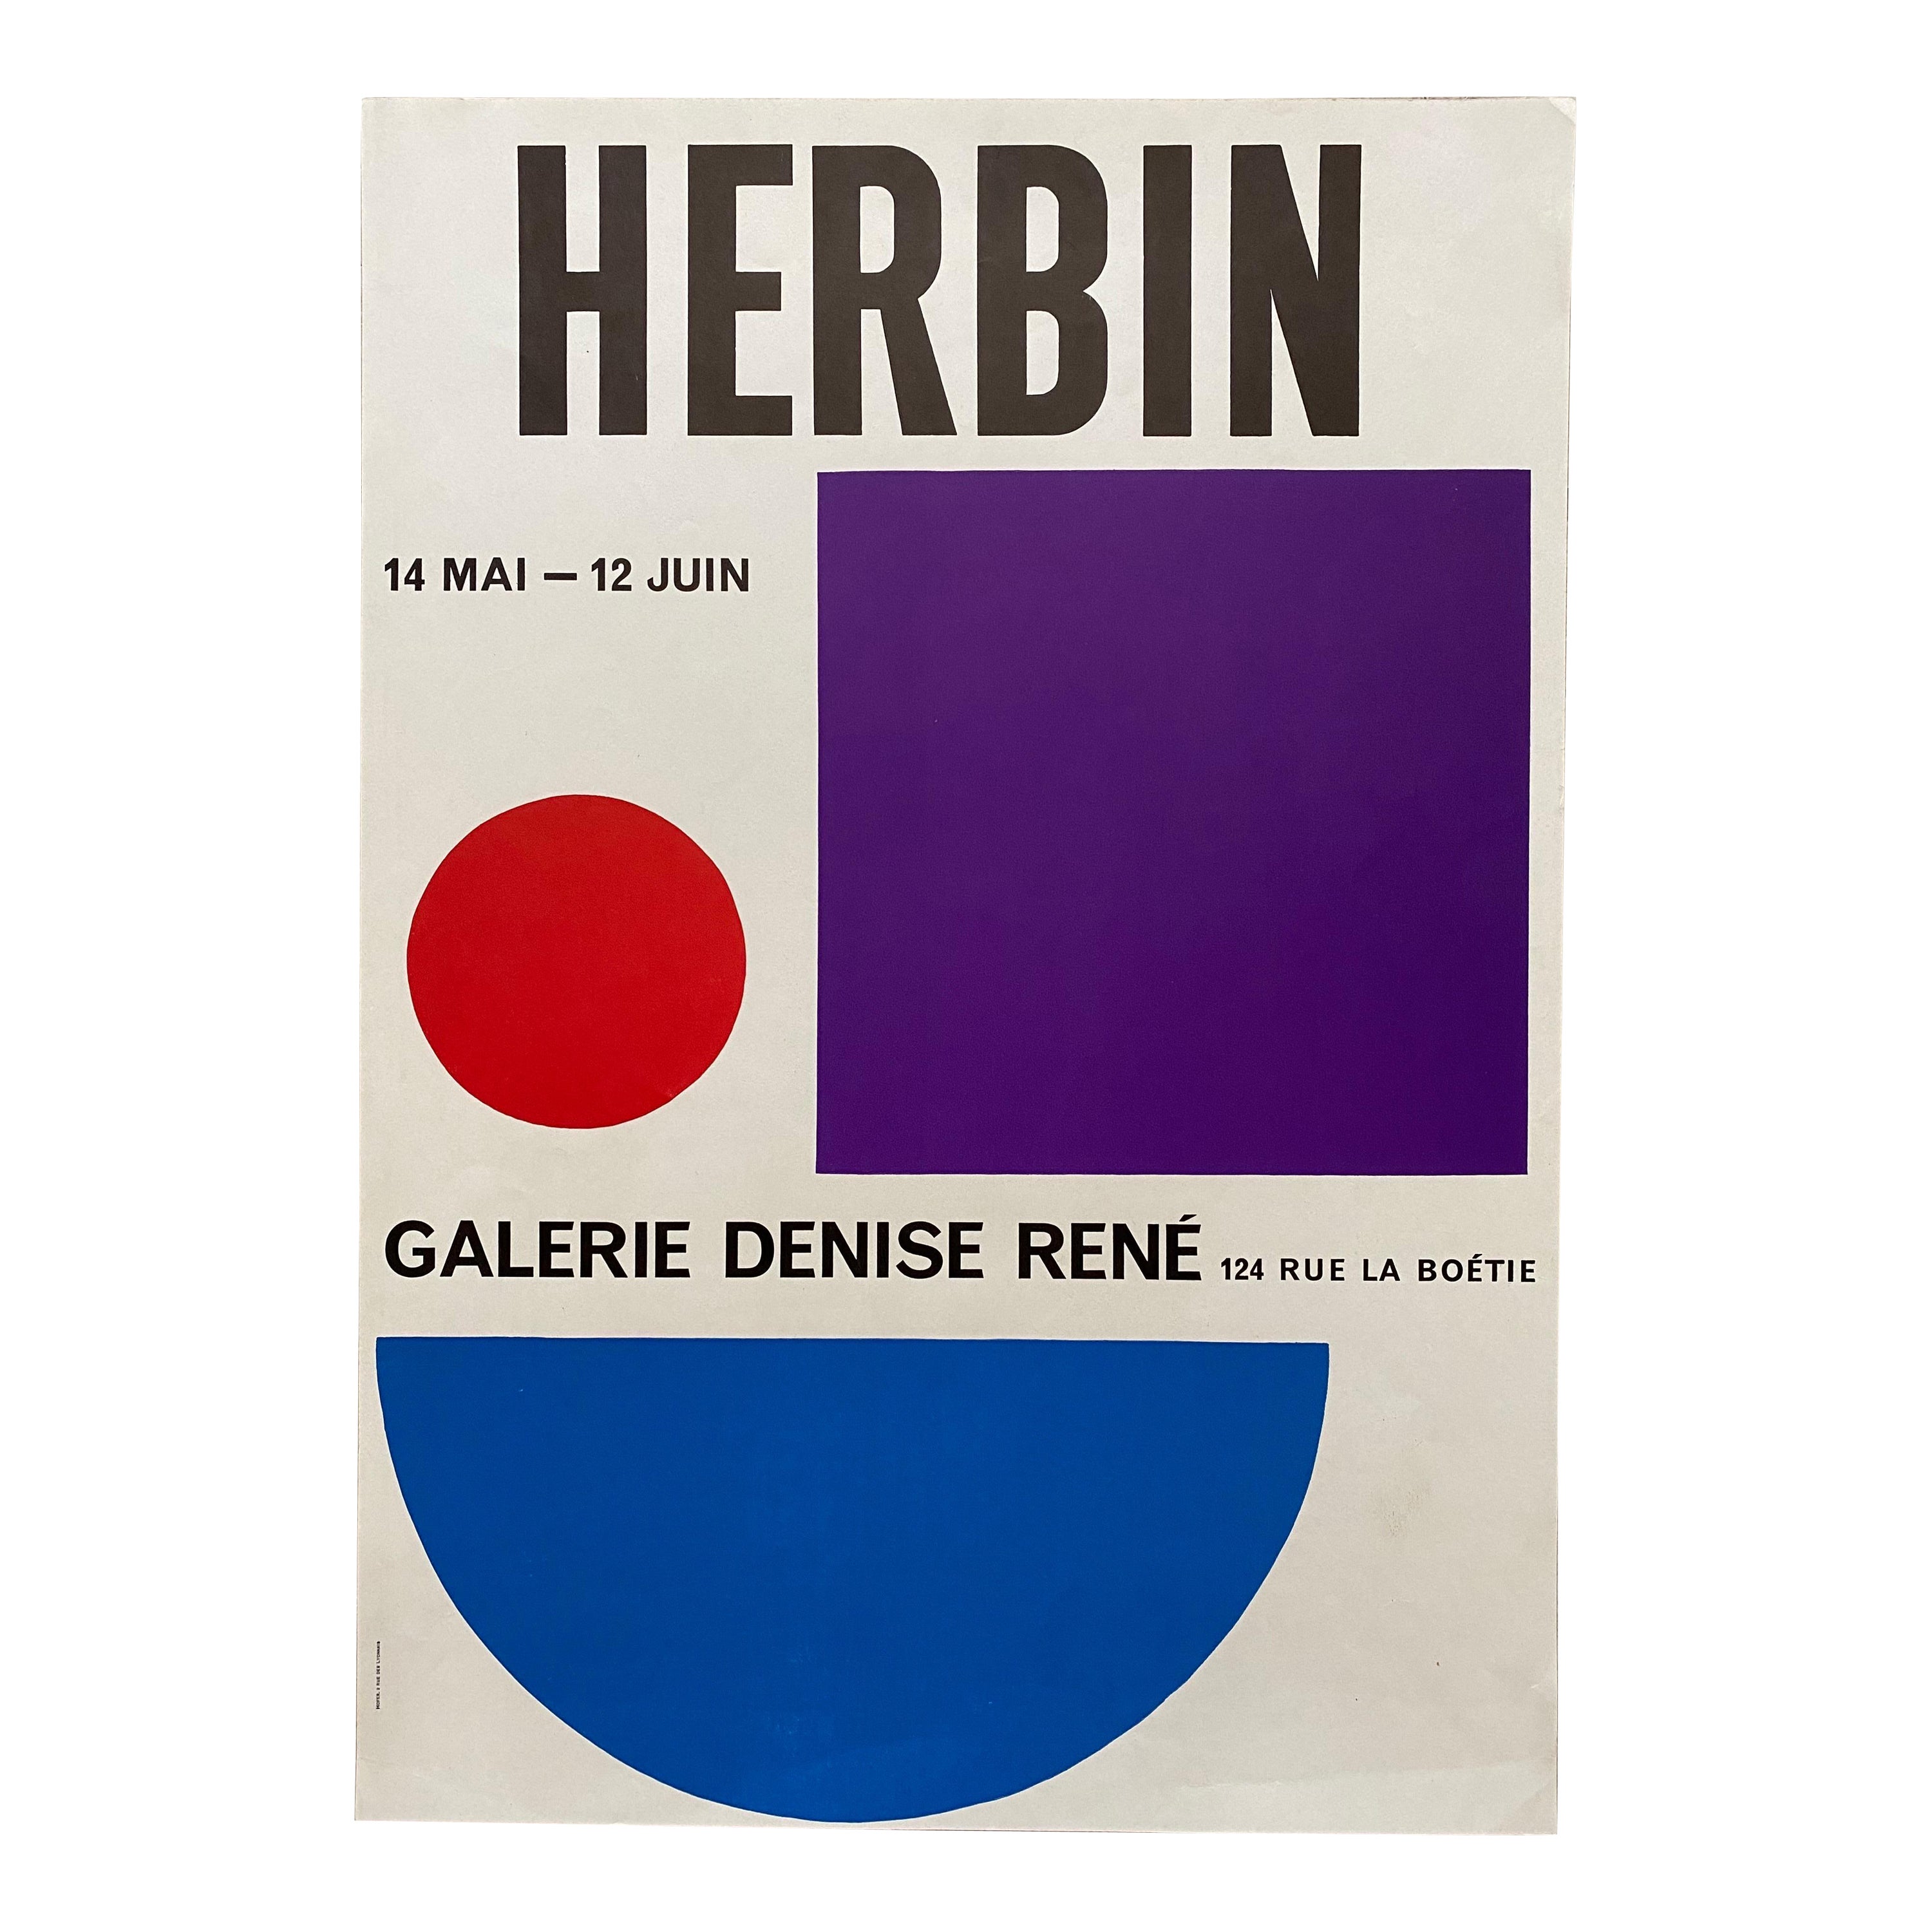 1954 Auguste Herbin-Ausstellungsdruck für die Galerie Denise Rene, Paris 